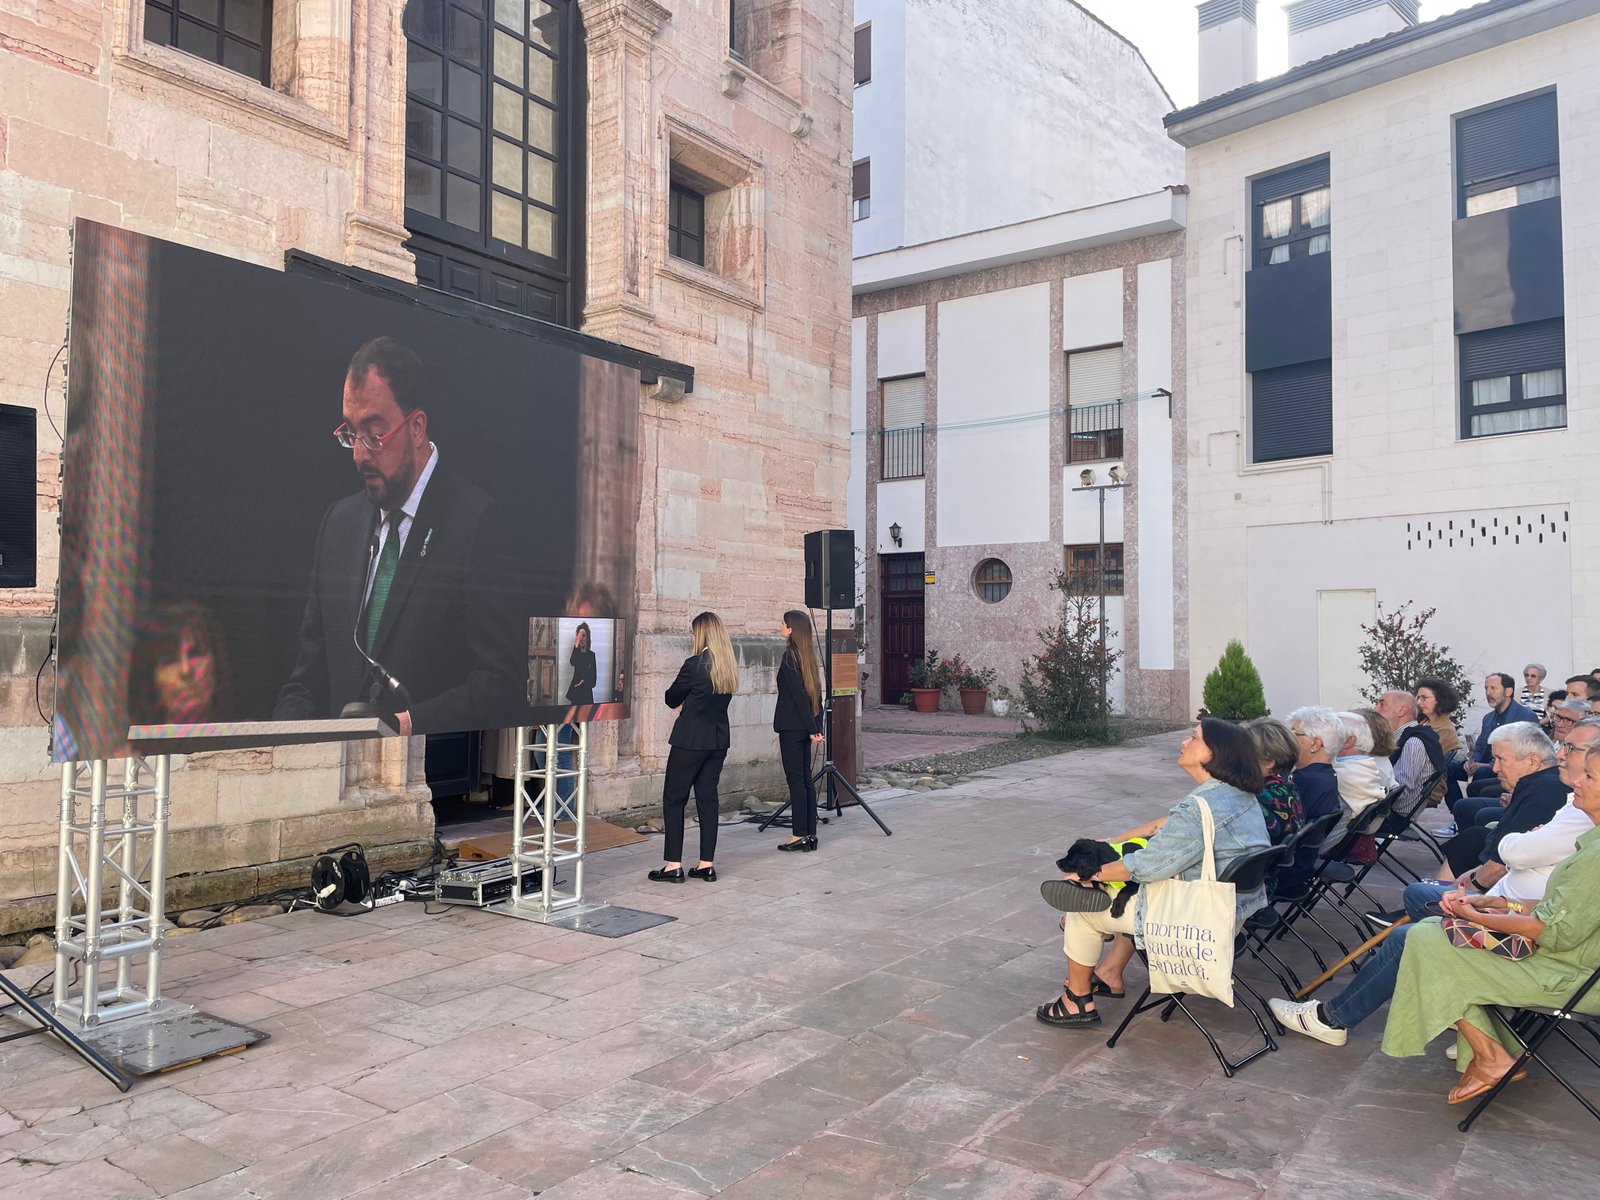 Retrasmisión en Directo y Streaming en Asturias